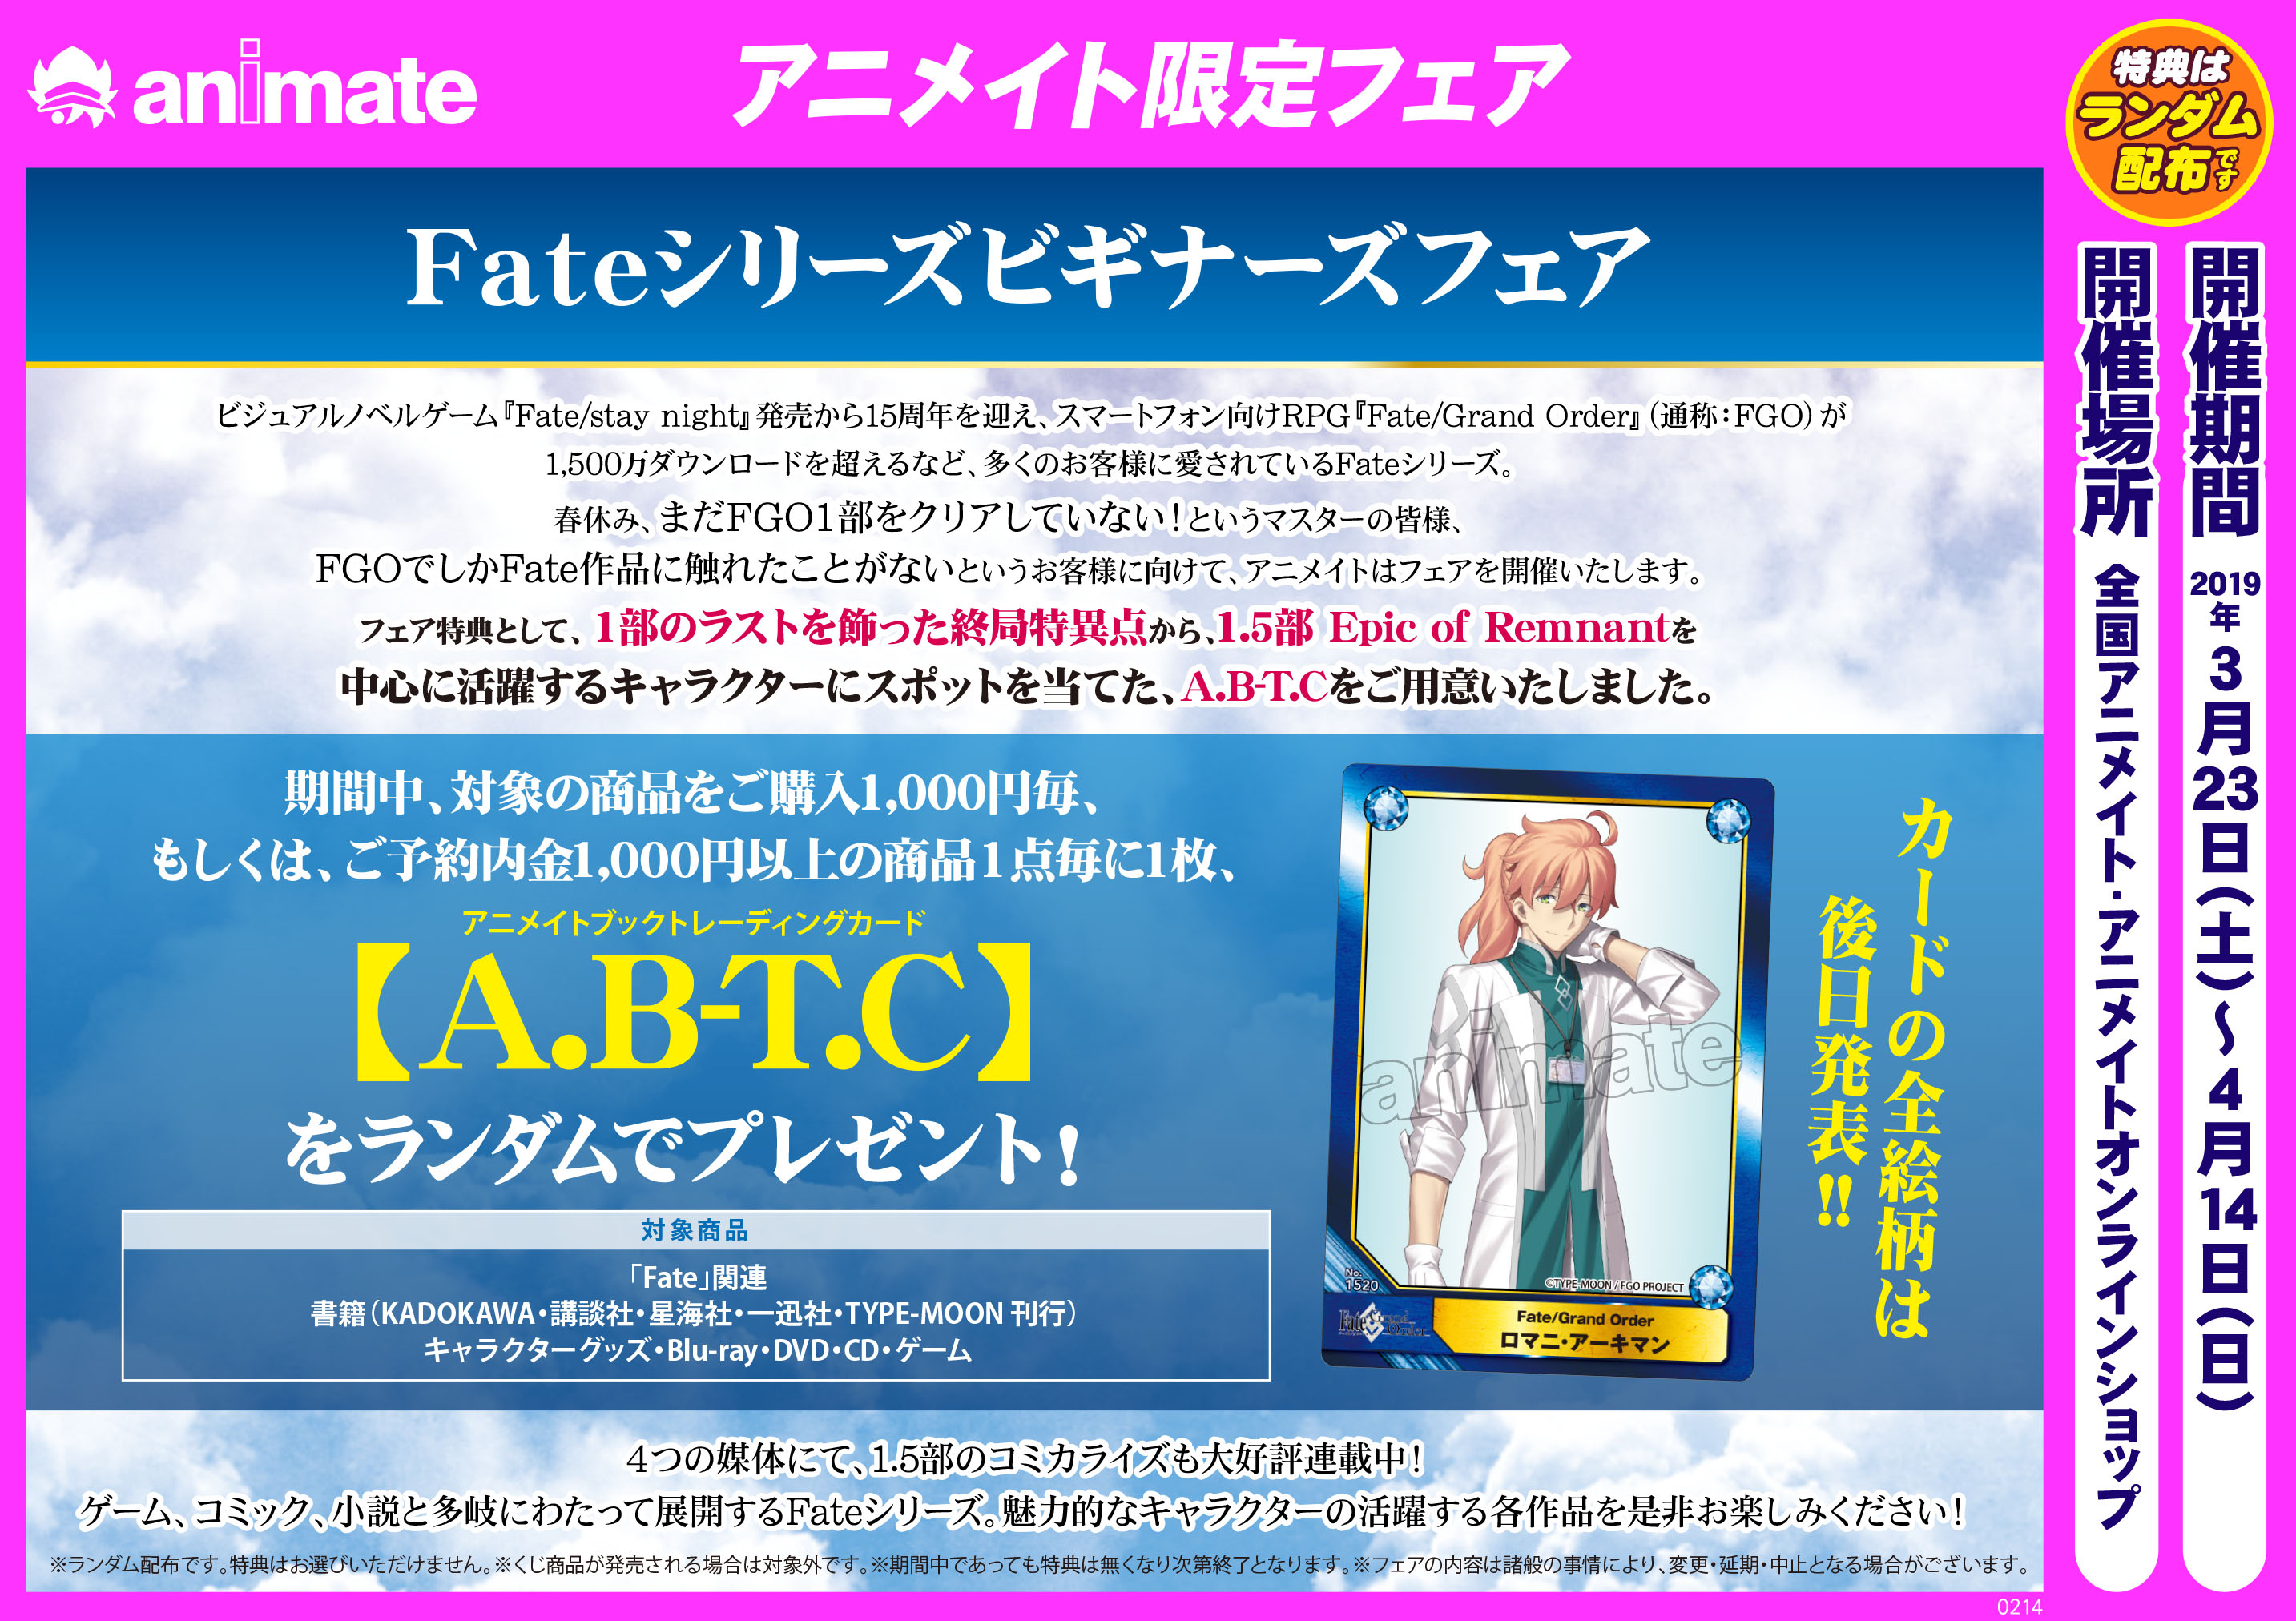 Fateシリーズビギナーズフェア アニメイト岐阜